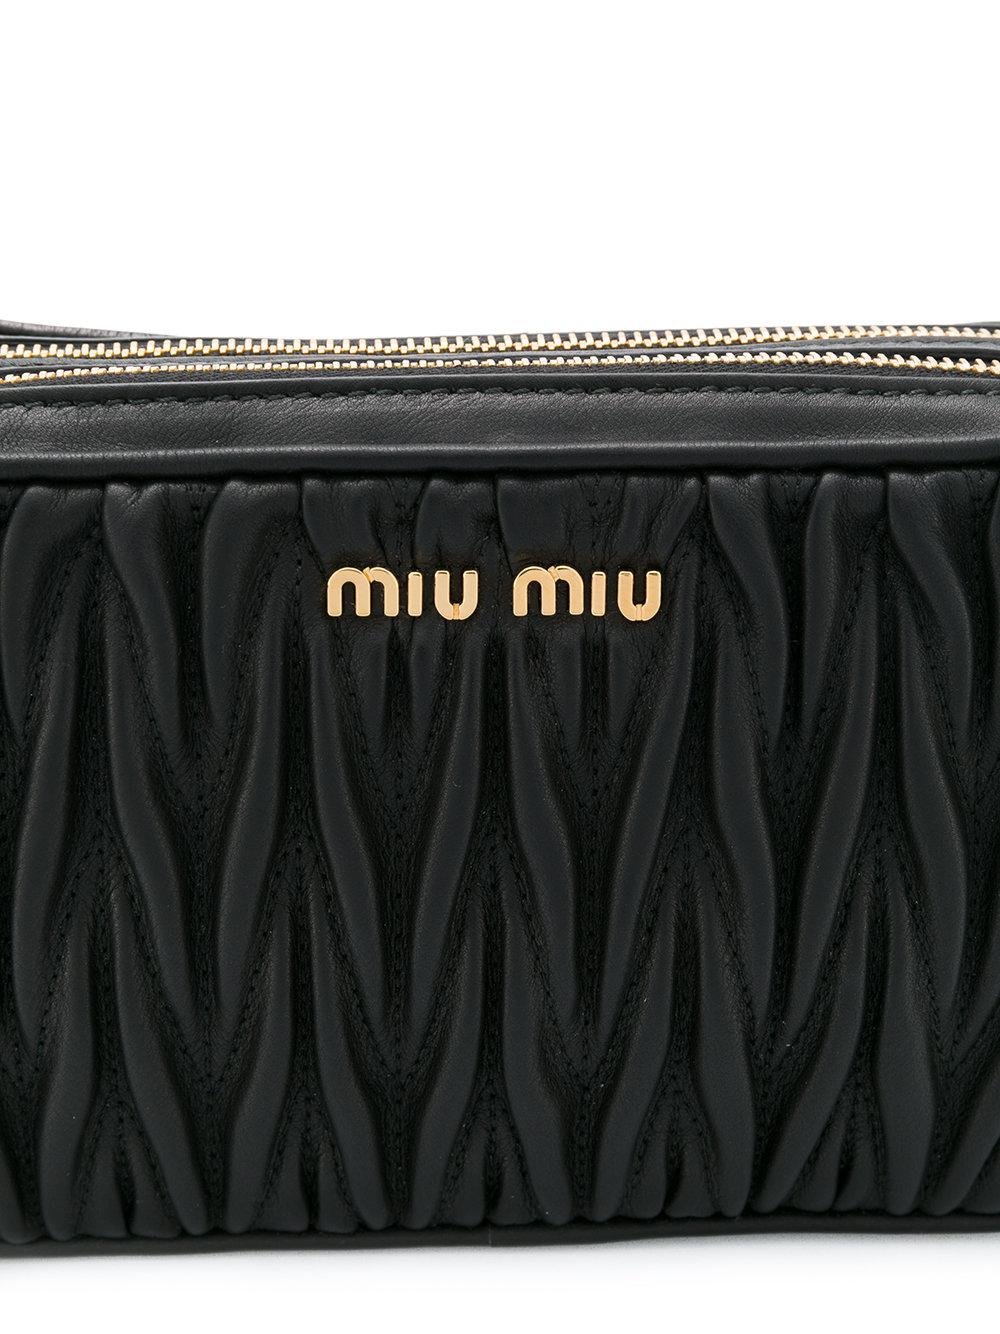 Miu Miu Black Matelasse Double Zipped Cross Body Bag Miu Miu